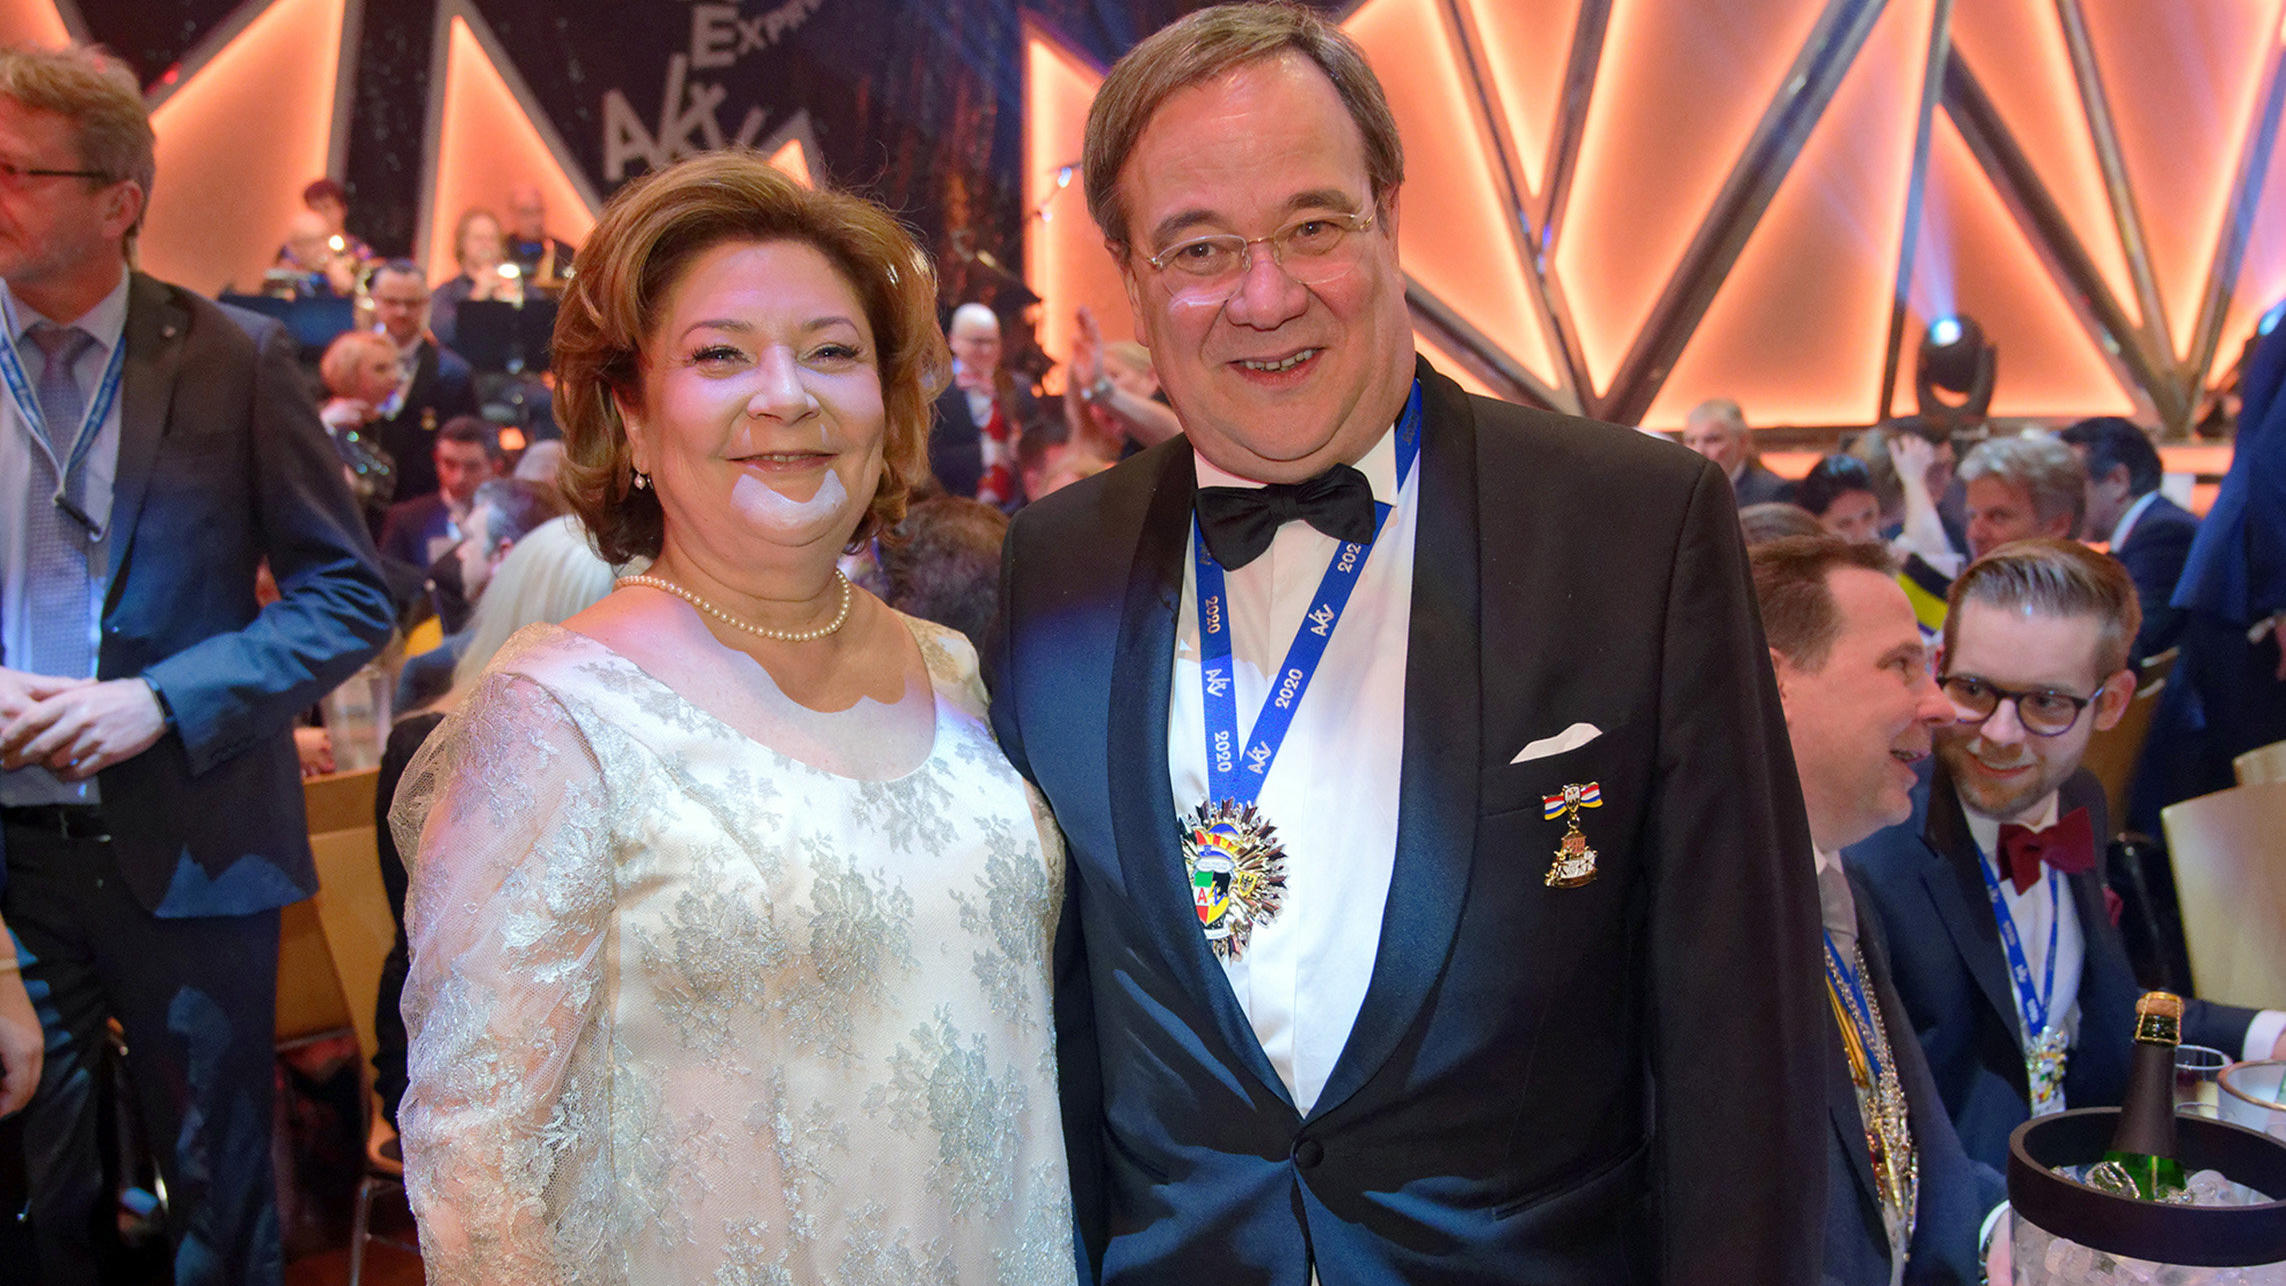 Armin Laschet, Ministerpräsident des Landes Nordrhein-Westfalen (CDU), und seine Frau Susanne Laschet stehen bei der Verleihung des Orden wider den Tierischen Ernst 2020 des Aachener Karnevalsvereins 